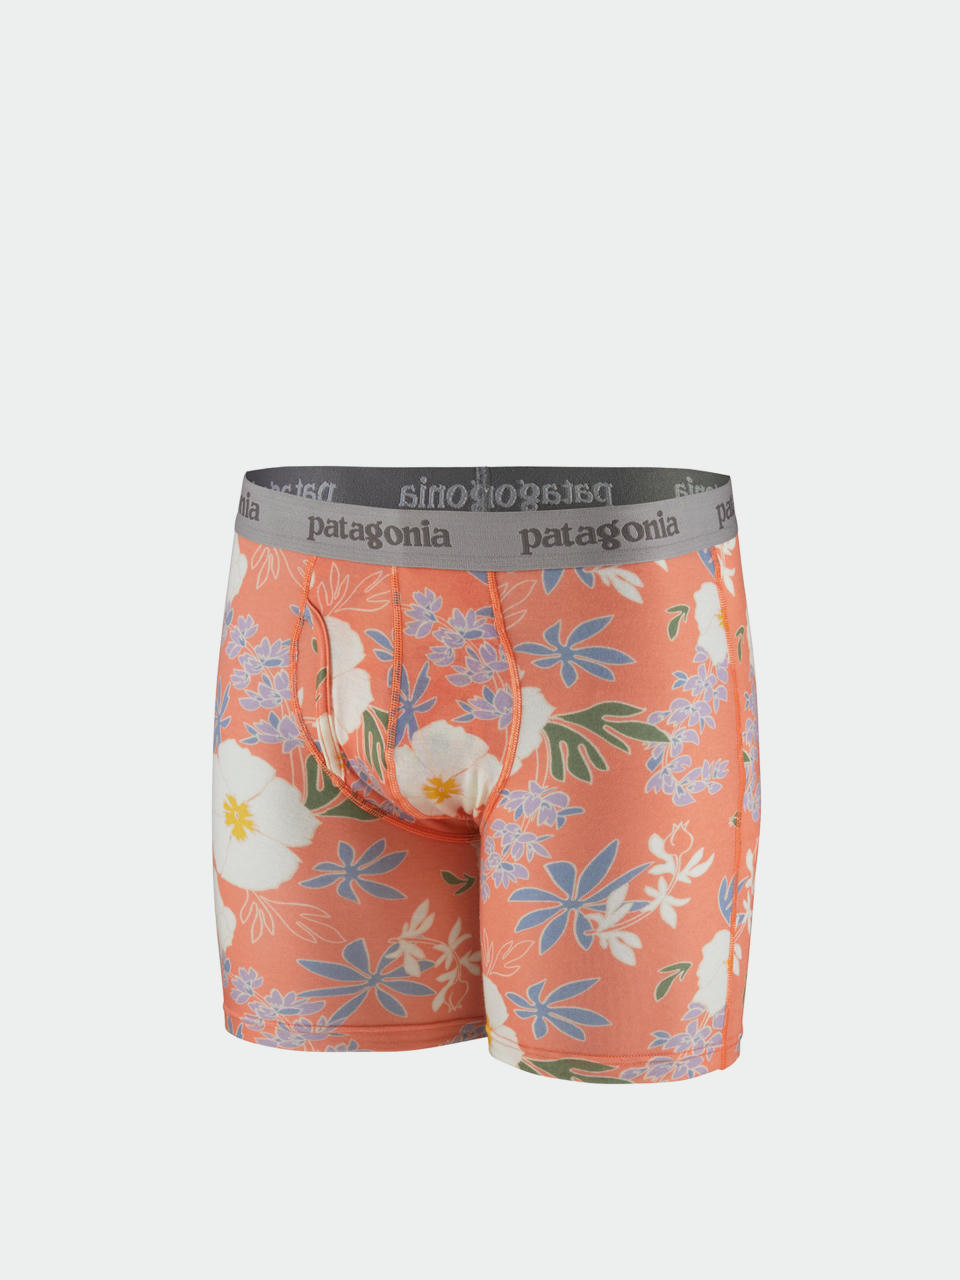 https://static.super-shop.com/1299699-patagonia-bokserki-essential-briefs-6-in-underwear-flower-power-tigerlily-orange.jpg?w=960